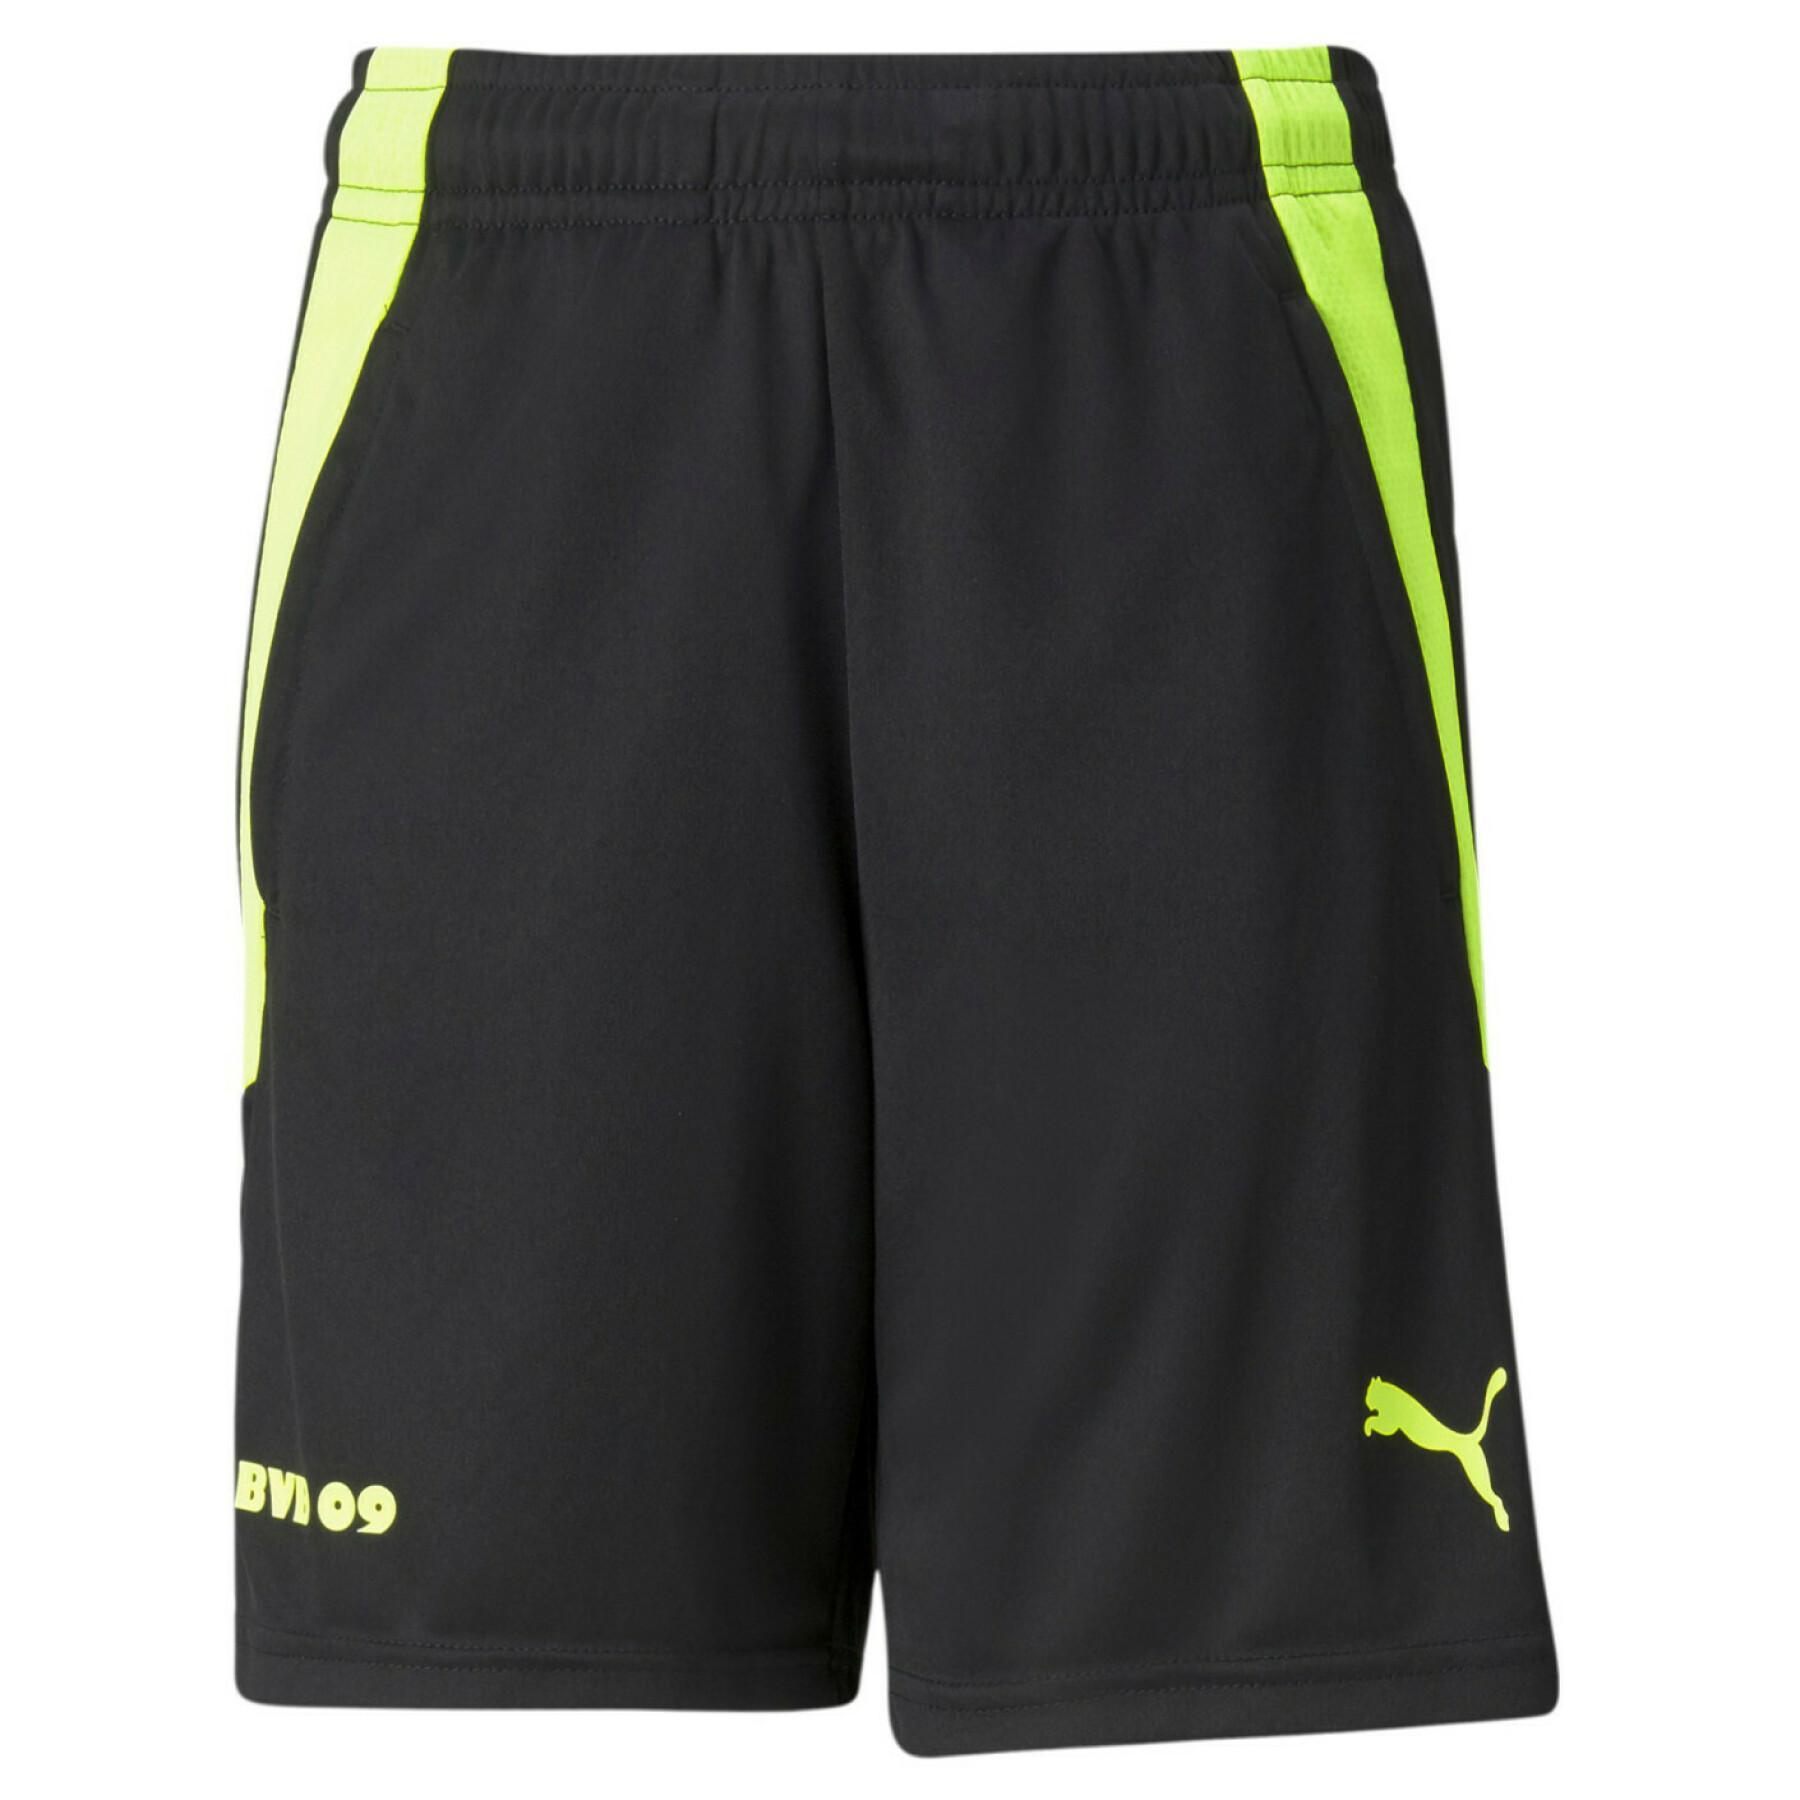 Children's shorts Borussia Dortmund